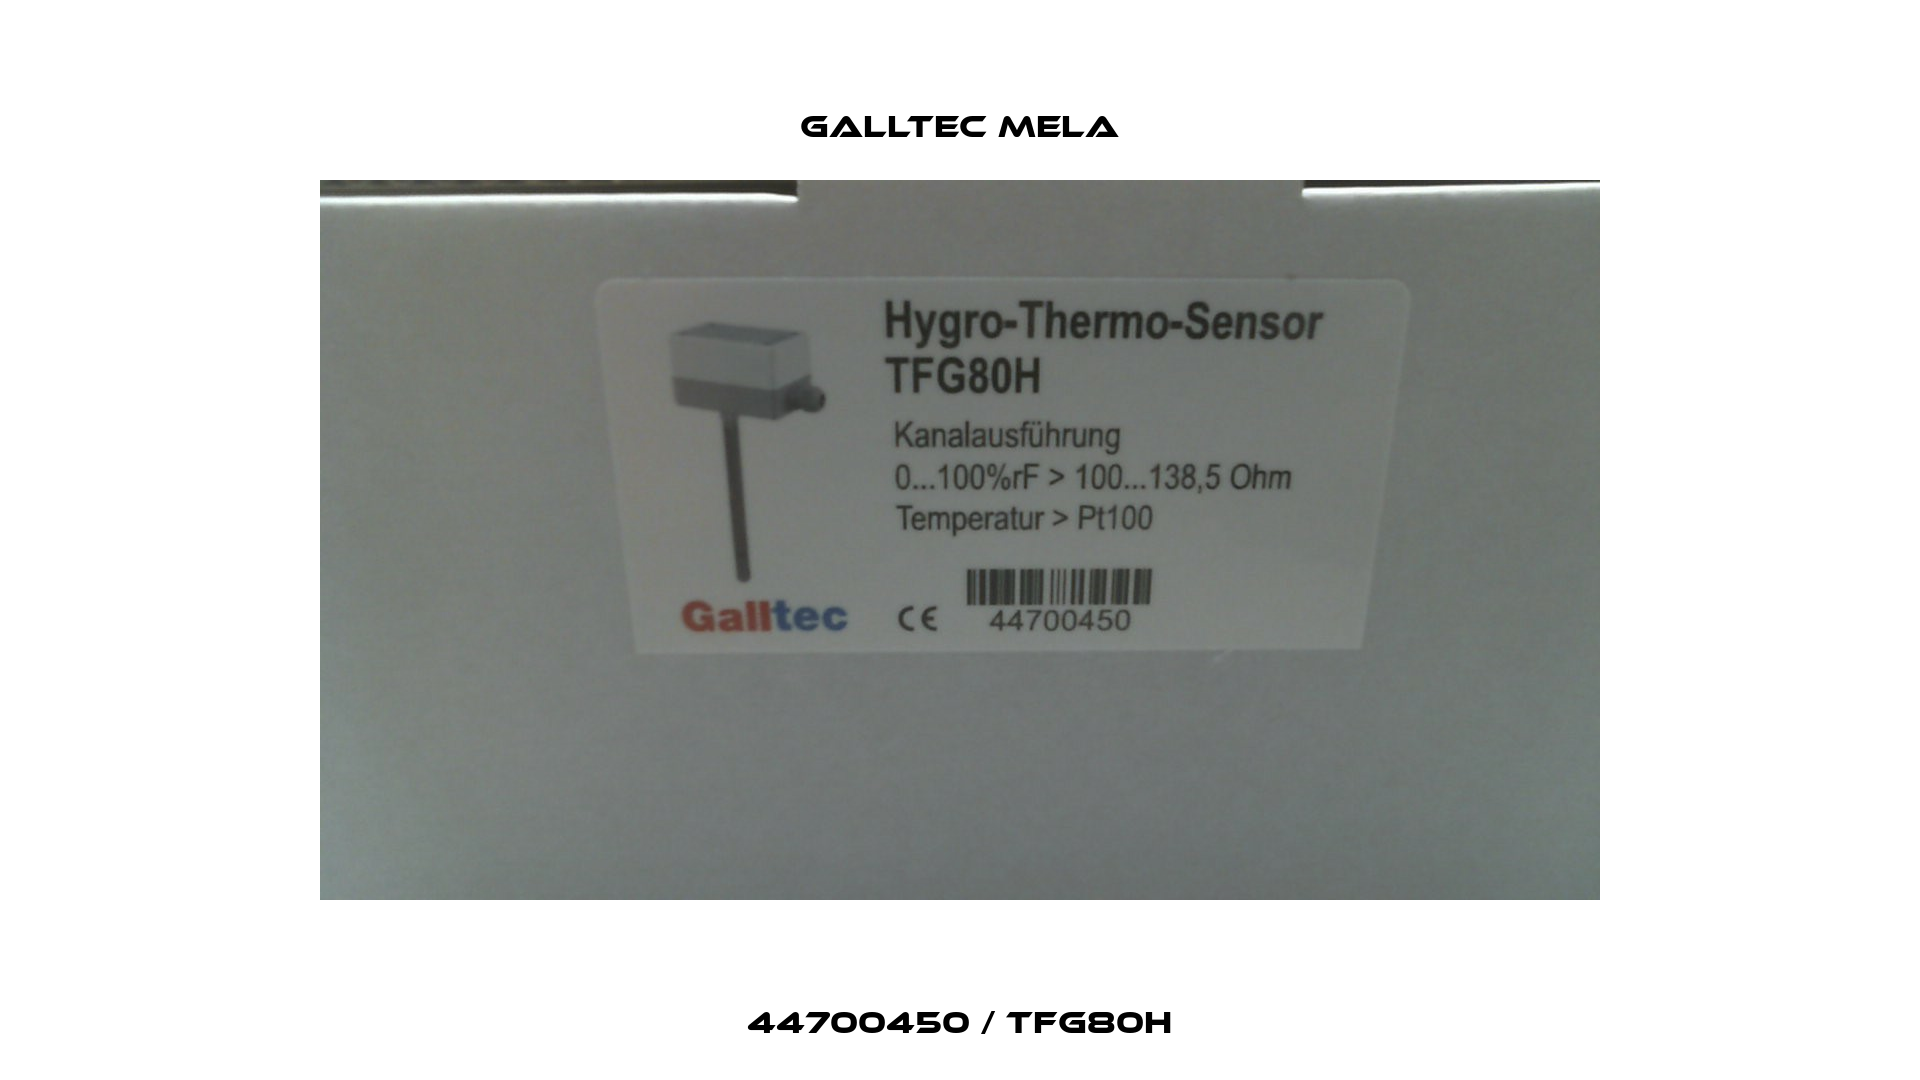 44700450 / TFG80H Galltec Mela